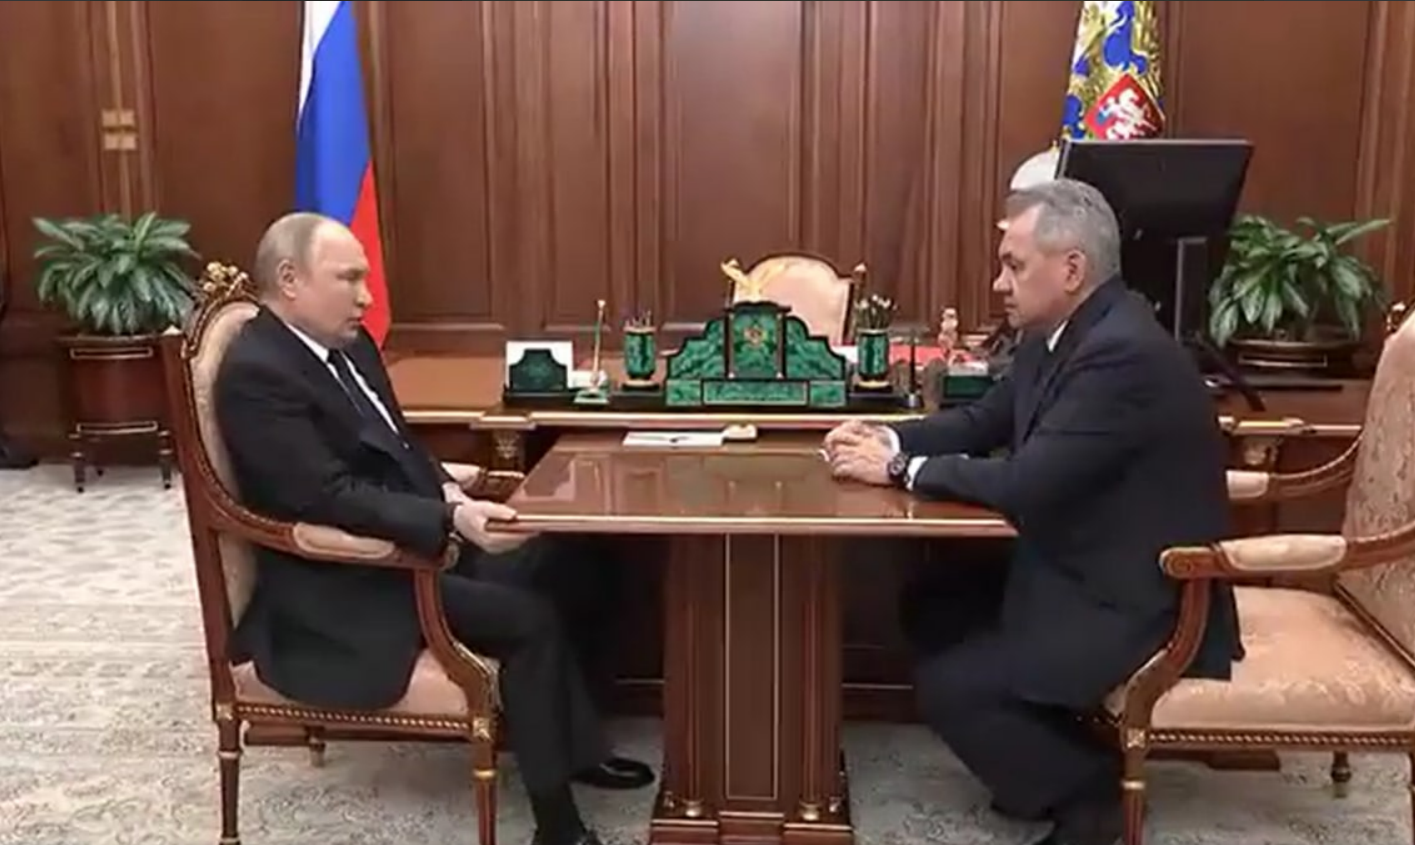 “Putyin nem engedi, hogy ukrán nácik, banderites (ukr. Бандерівці) és kábítószer-függők lefoglalják az asztalát”: az orosz elnök Sojguval folytatott találkozója alkalom volt a mémekre